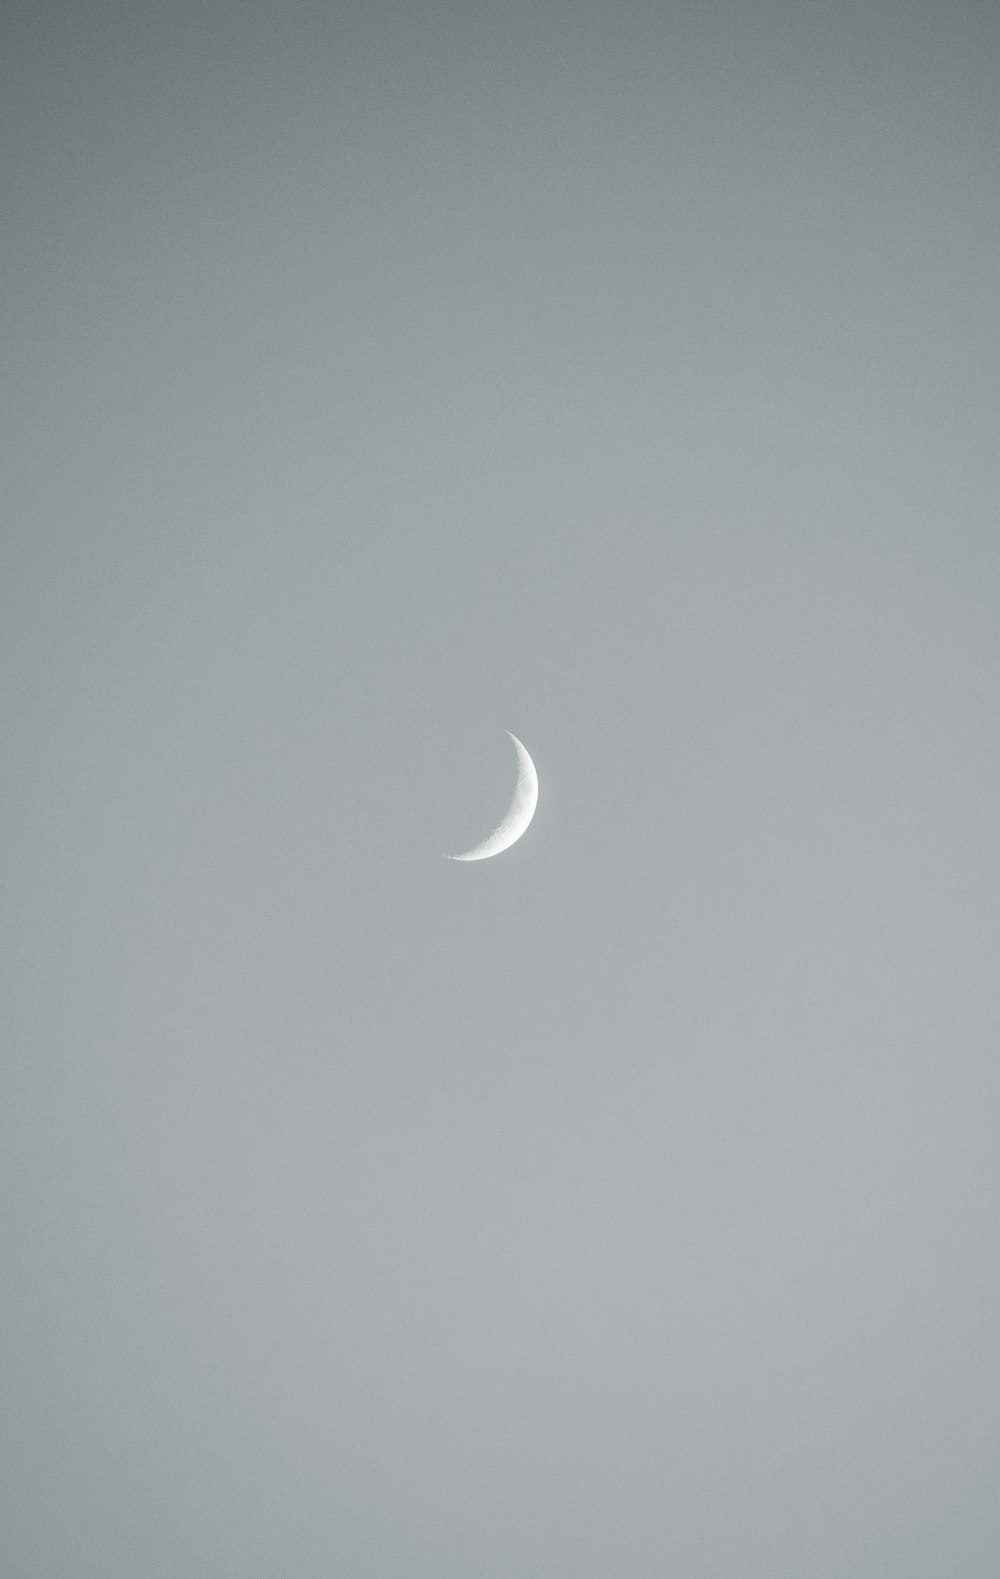 moon in grey sky